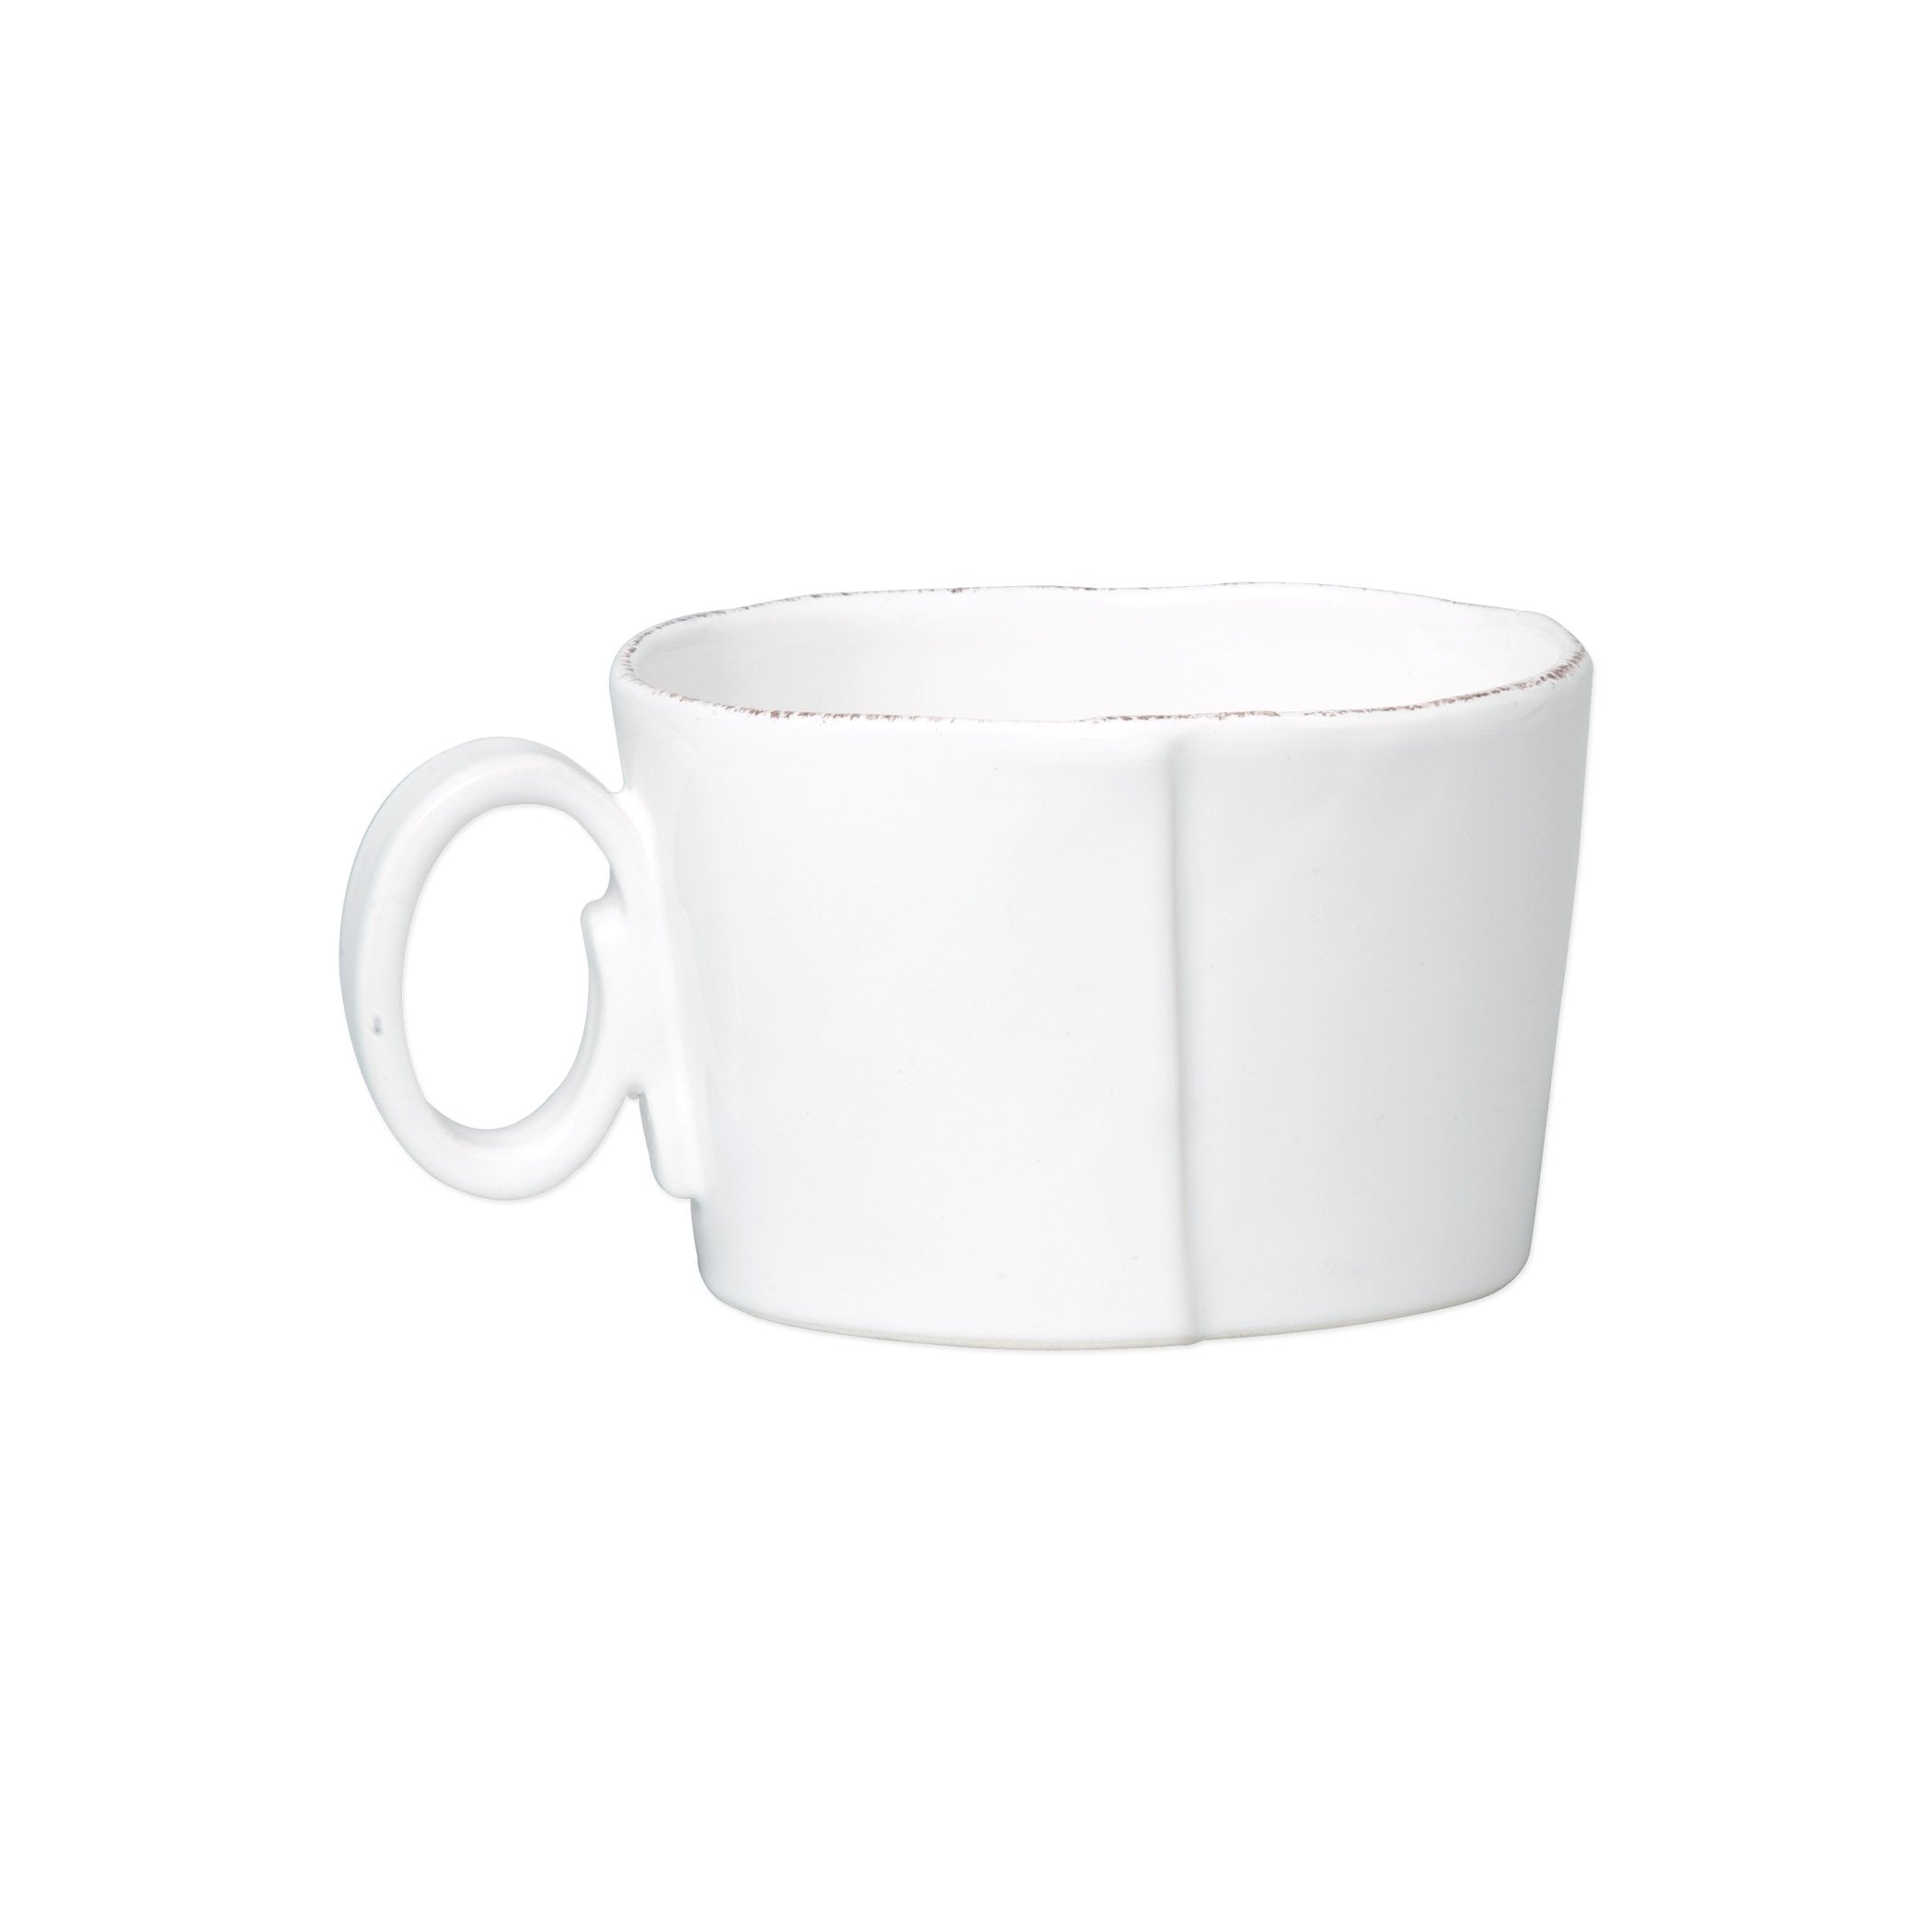 22 OZ Ceramic Extra Large White Coffee Mug with Handle,Oversized